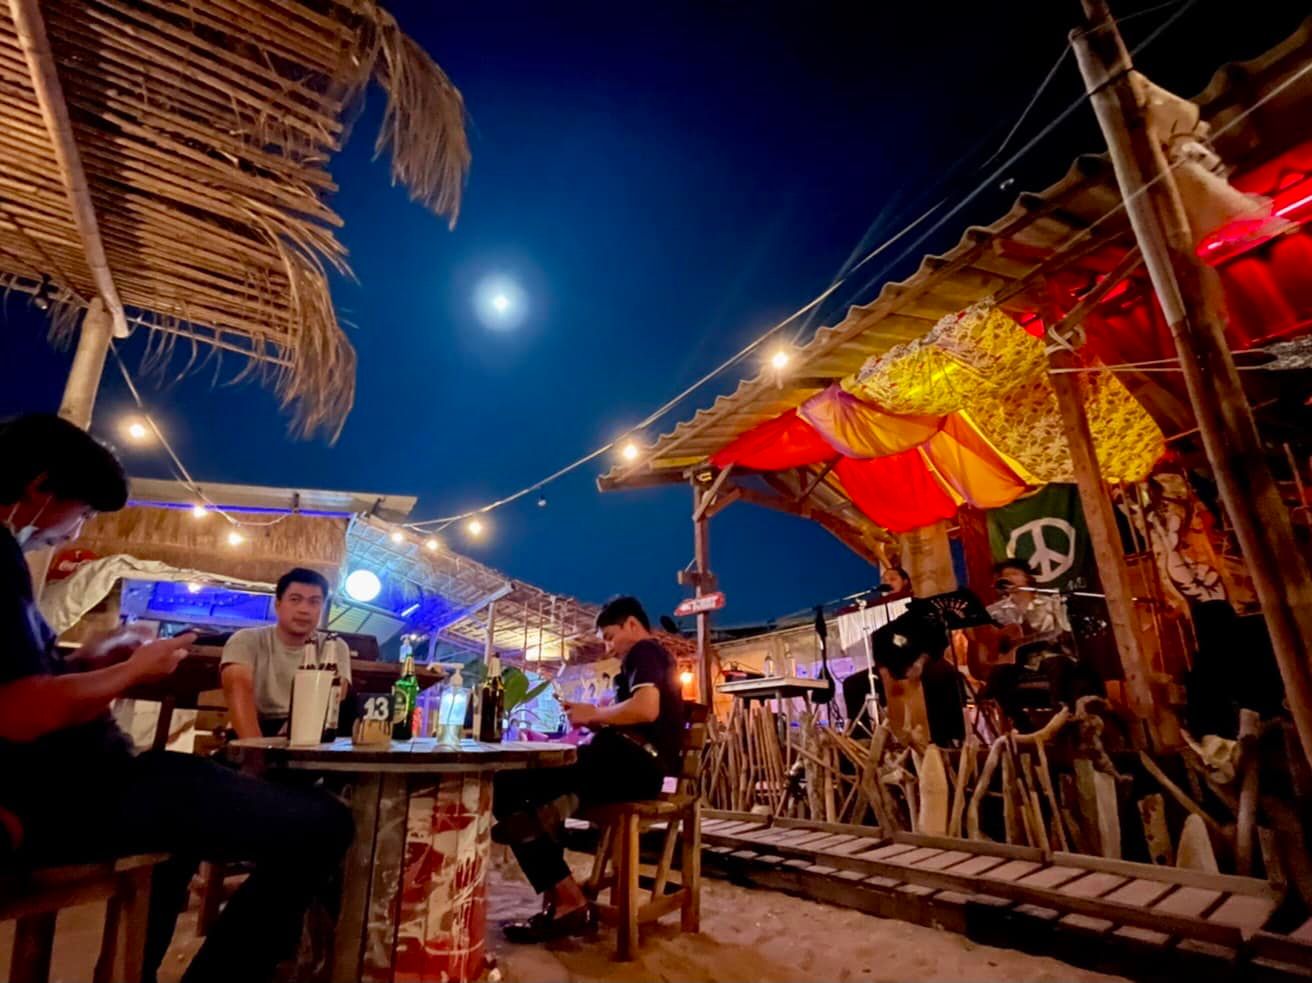 แลเล บางแสน คาเฟ่&บาร์ (Laelay Bangsaen Cafe&Bar) : ชลบุรี (Chon Buri)